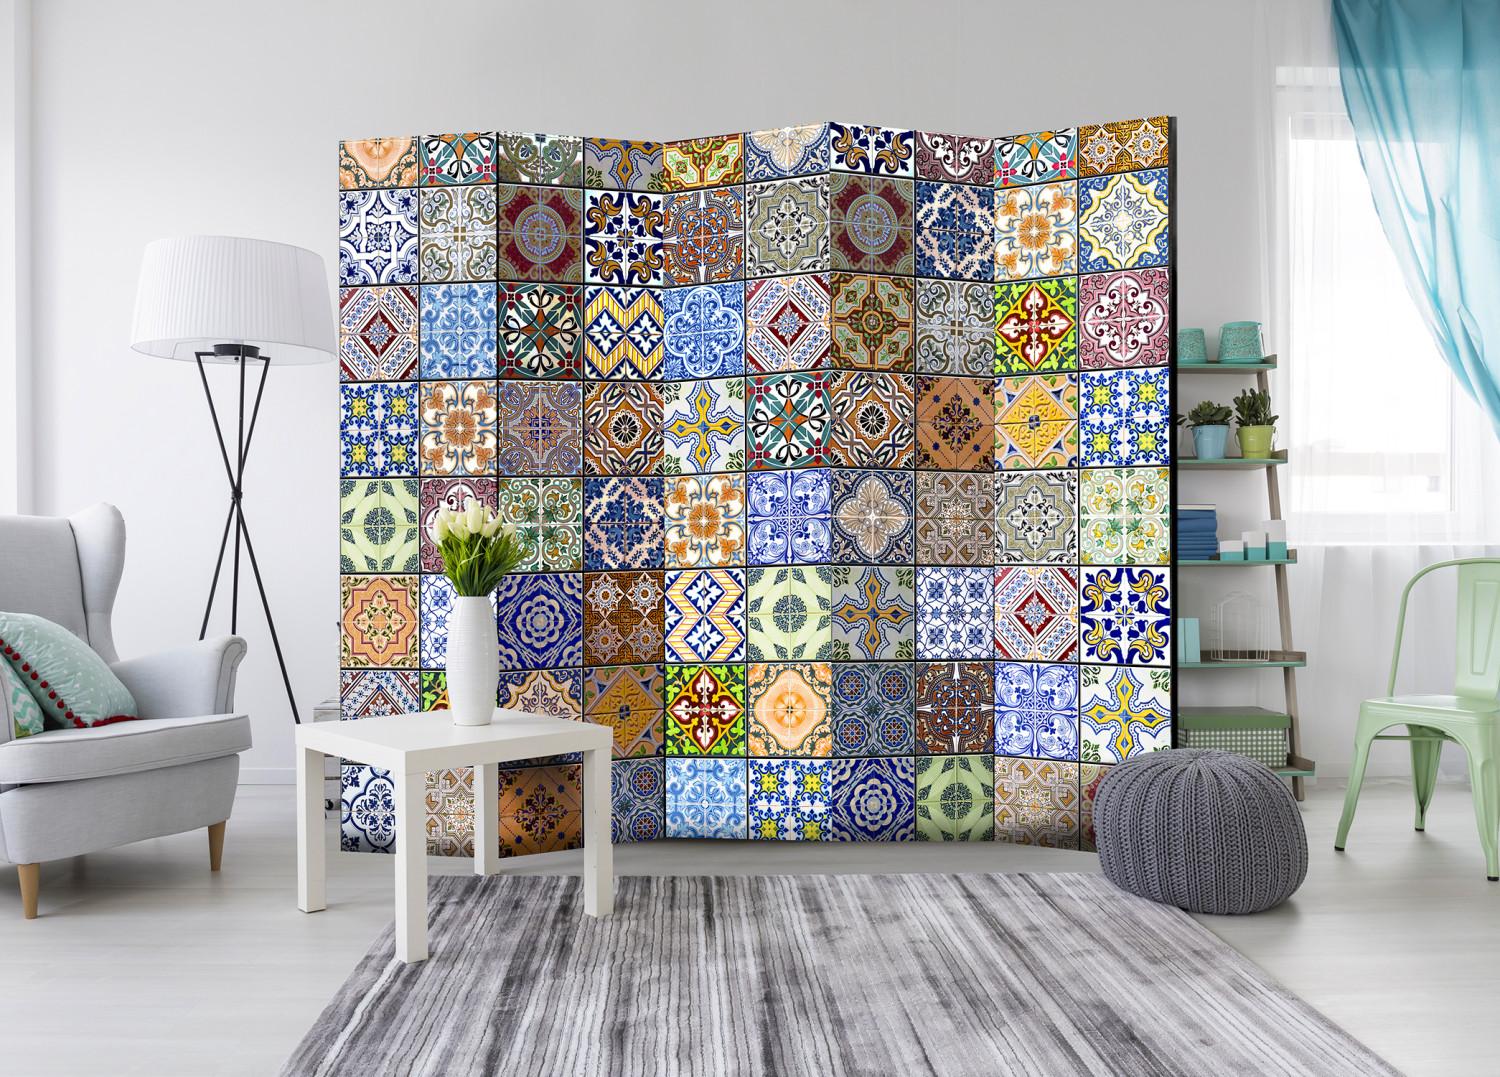 Biombo decorativo Mosaico colorido II - textura de mosaico colorido en estilo étnico